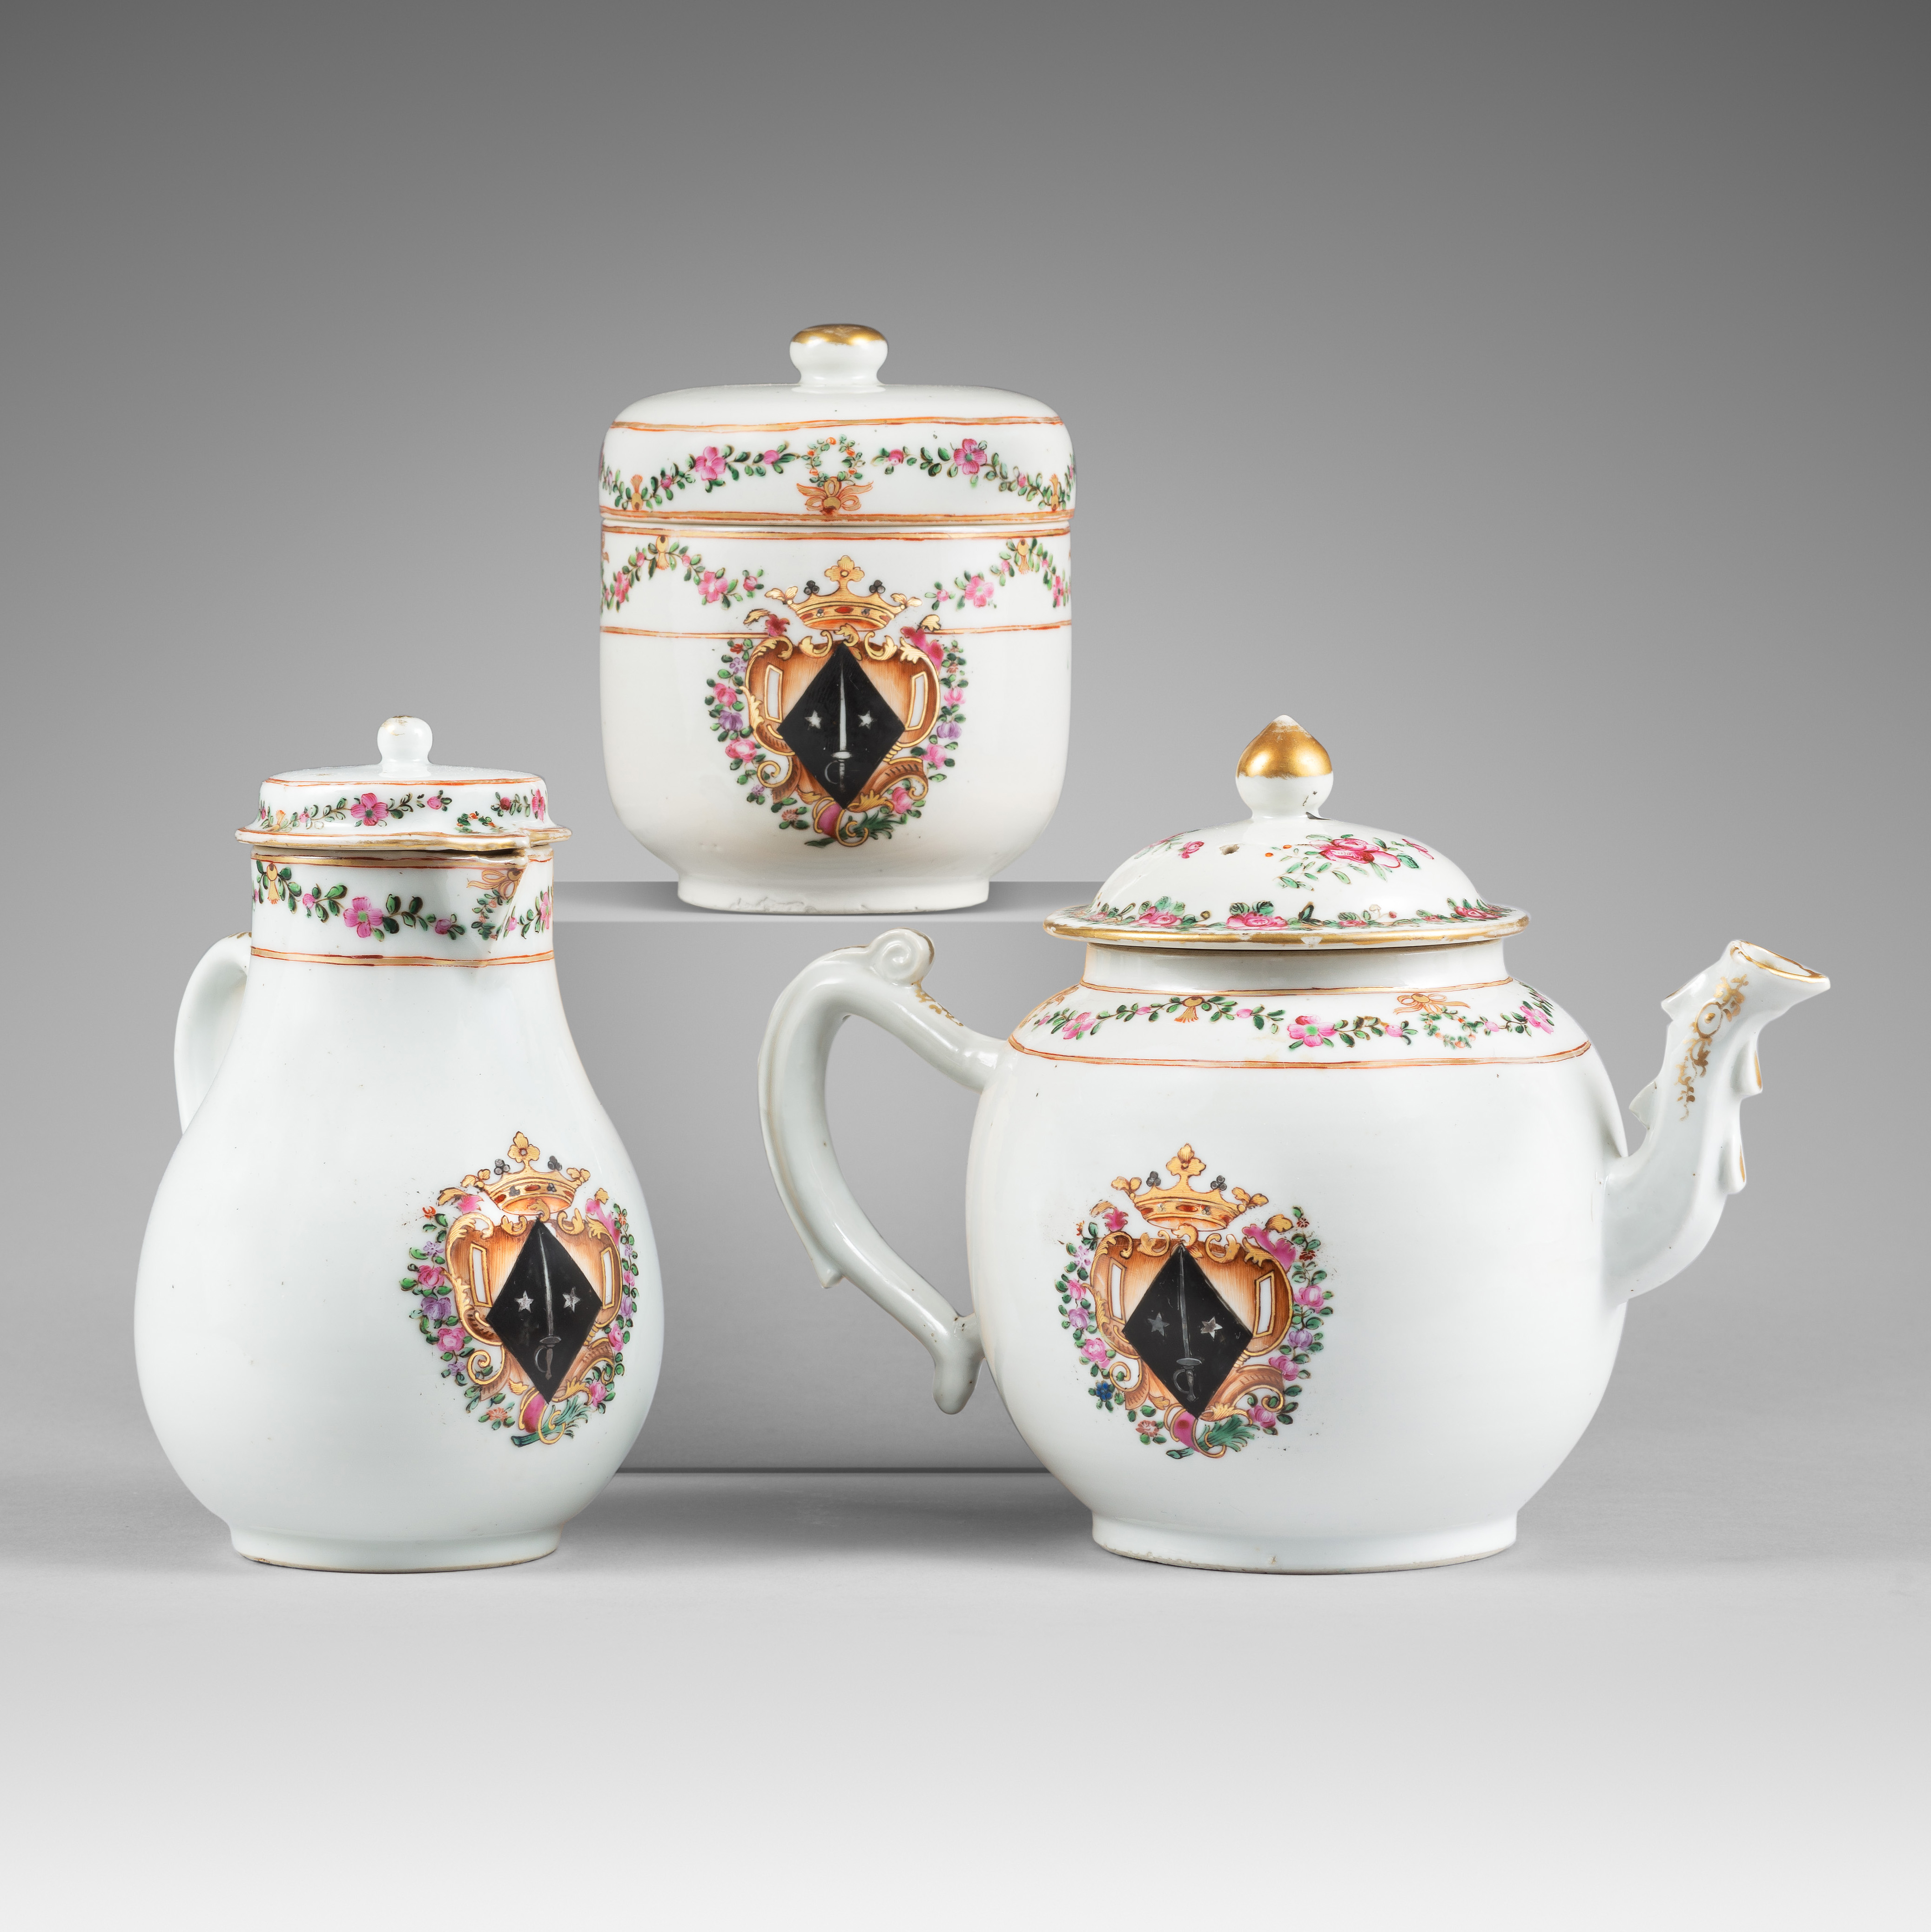 Porcelaine Qianlong (1736-1795), vers 1765, Chine